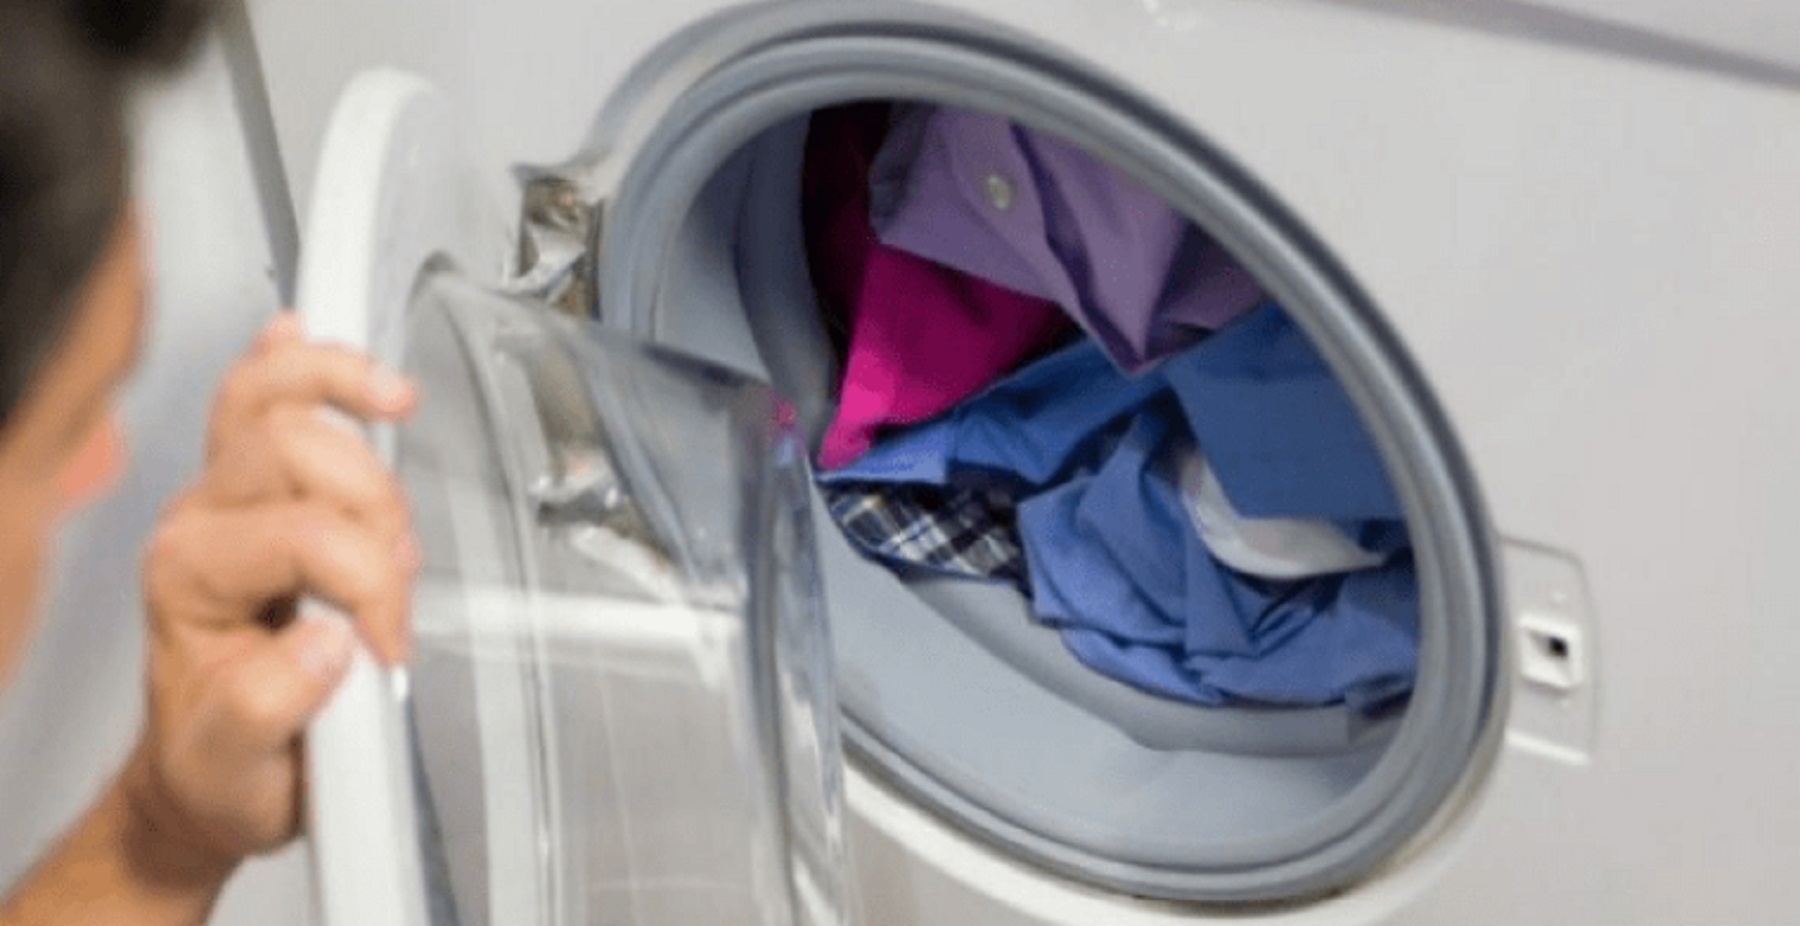 El lavarropas requiere de algunos cuidados particulares para mantenerse óptimo.-